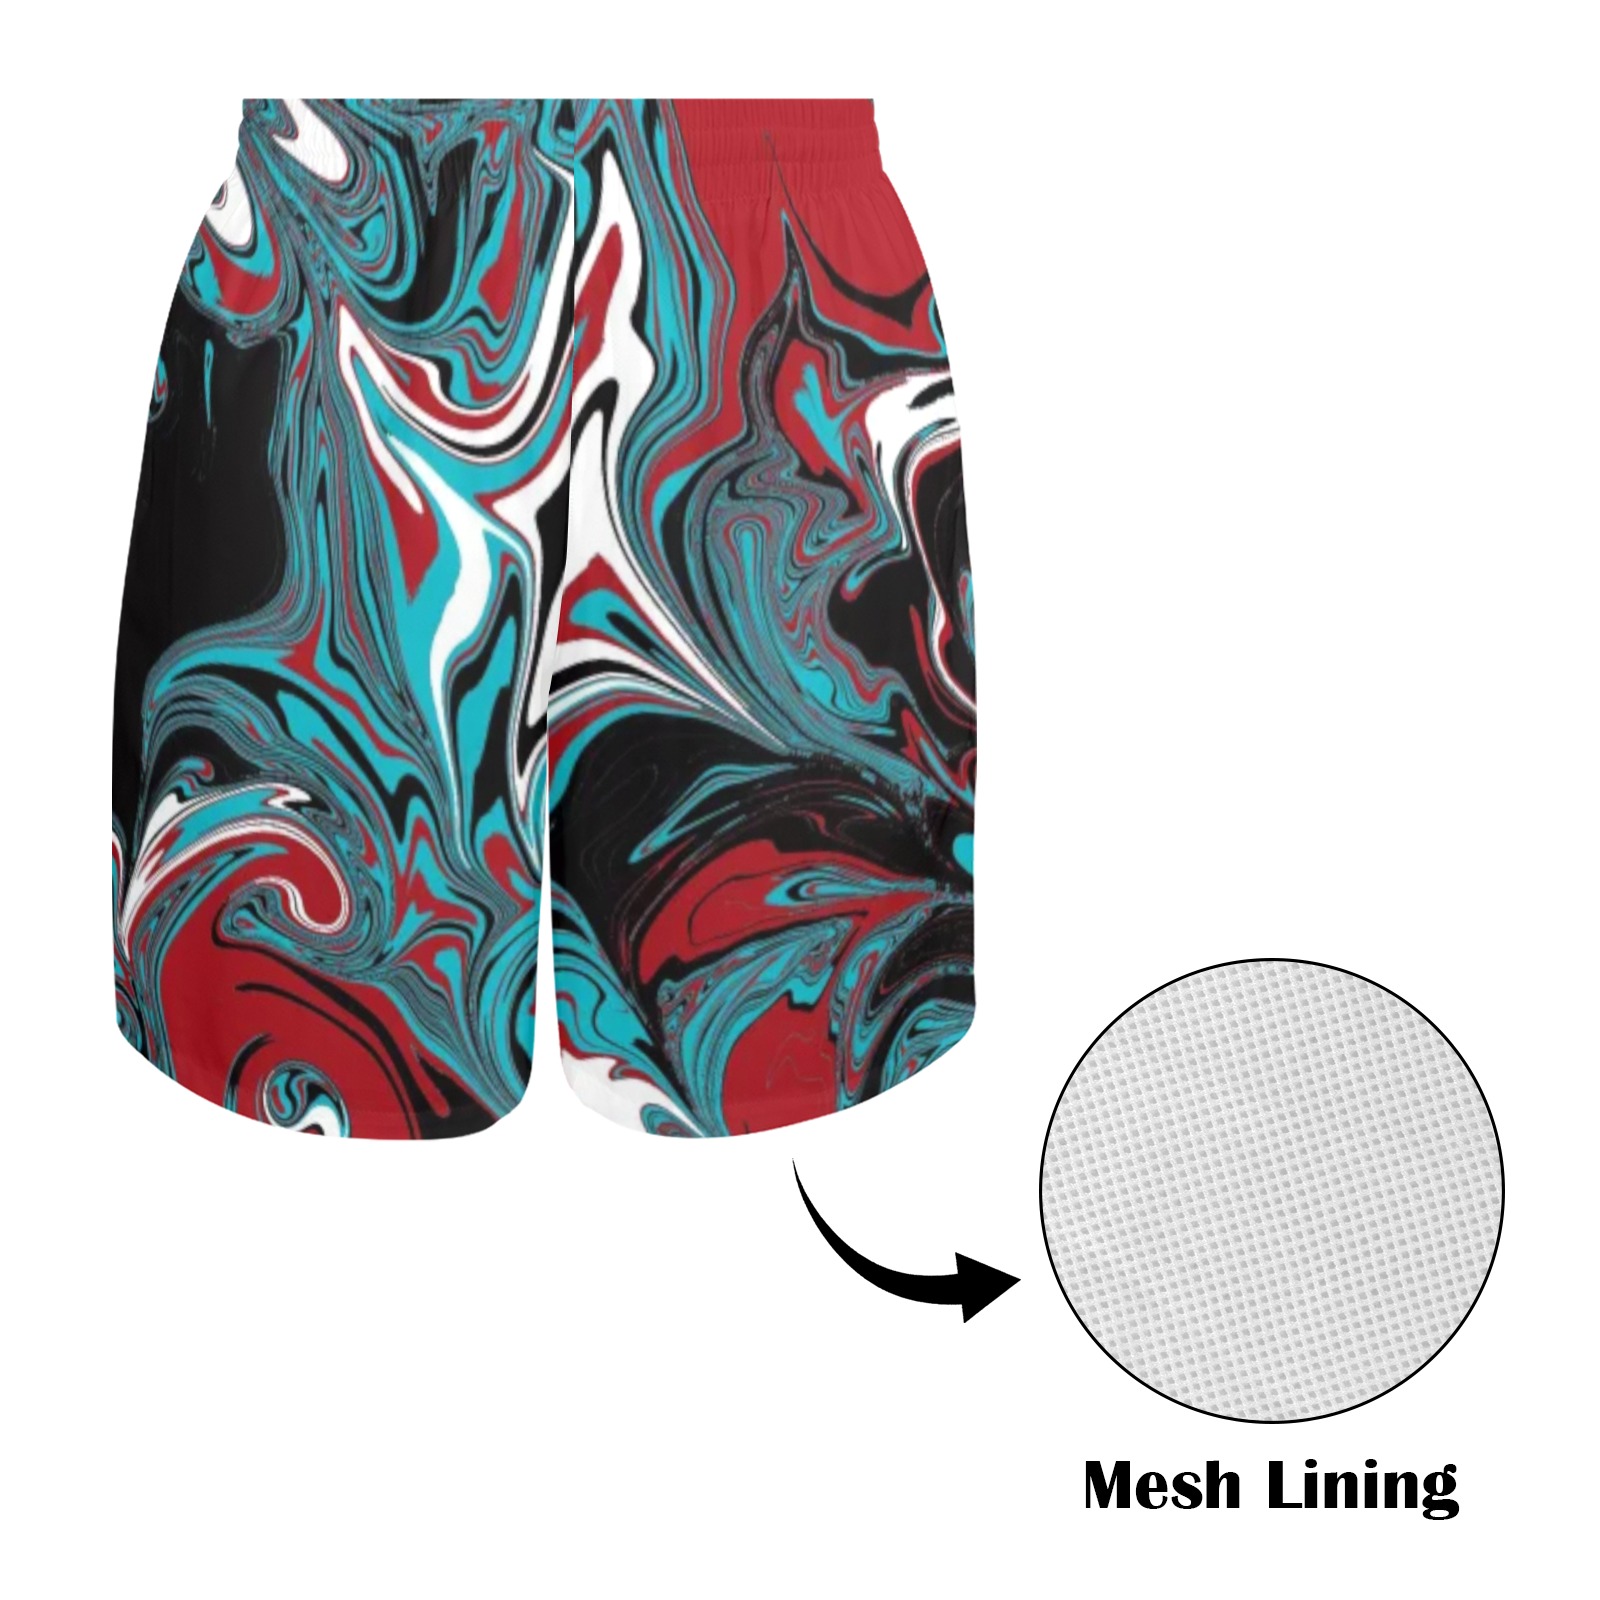 Dark Wave of Colors Men's All Over Print Elastic Beach Shorts (Model L20-2)